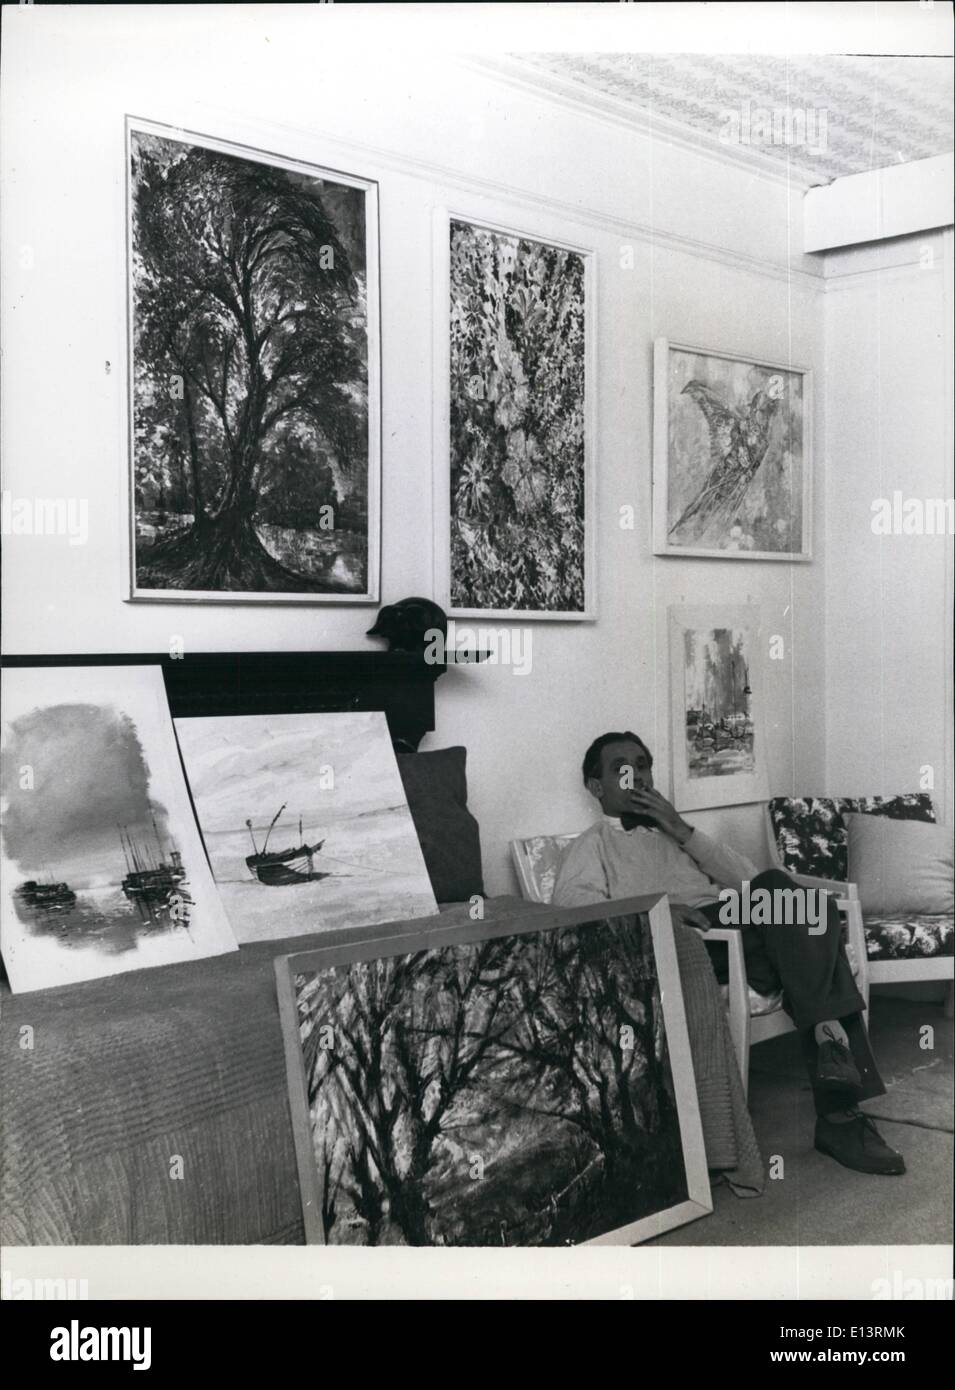 27 mar 2012 - Mostra di dipinti di cellulosa: il sig. Mann seduto accanto ad alcuni dei suoi dipinti in mostra a South Kensington. Foto Stock